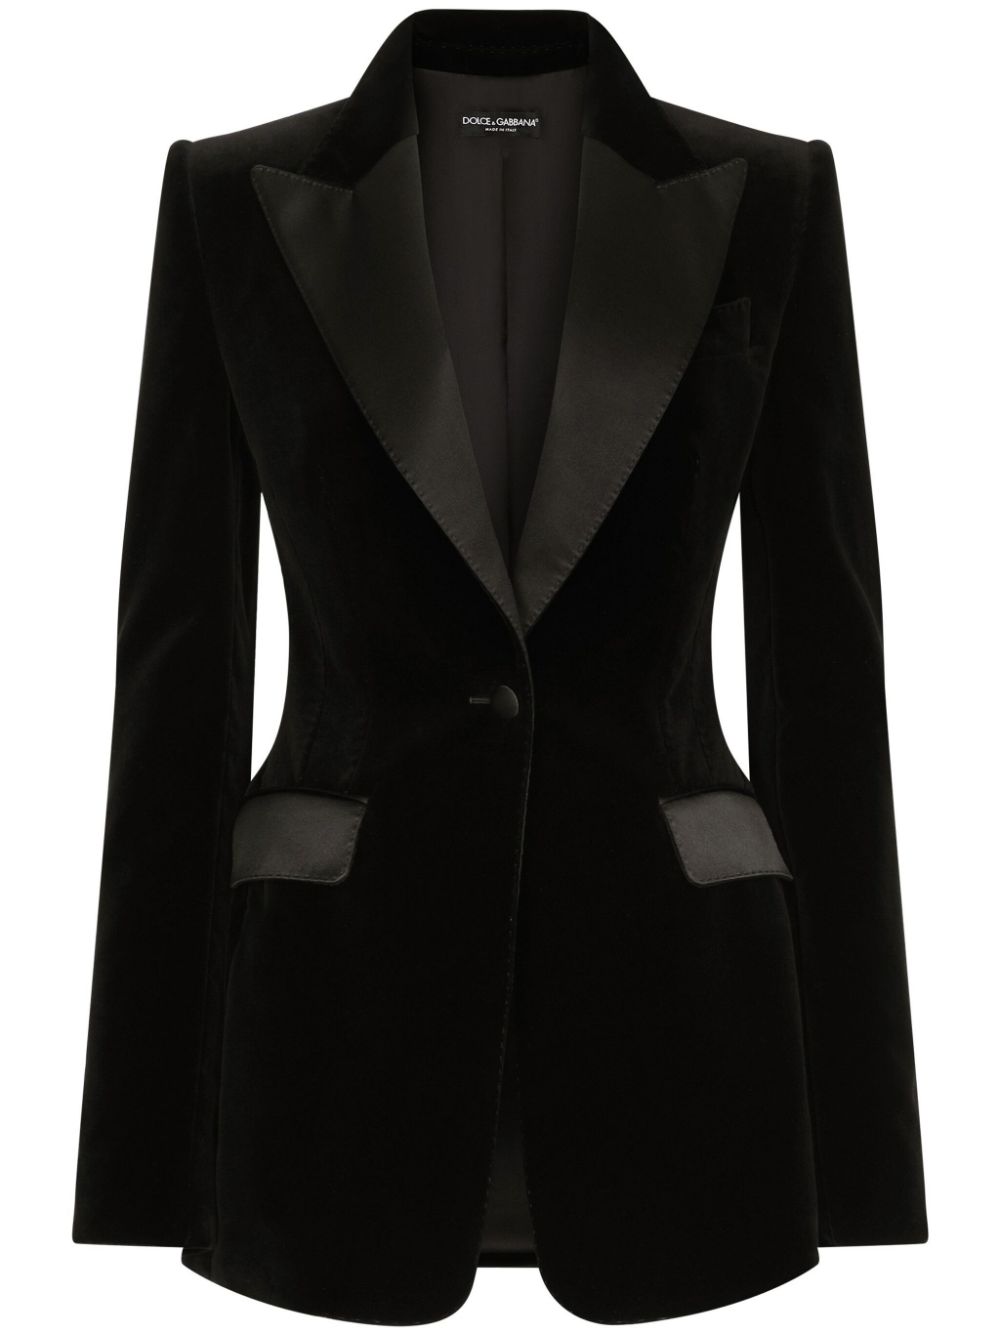 Image 1 of Dolce & Gabbana single-breasted velvet blazer